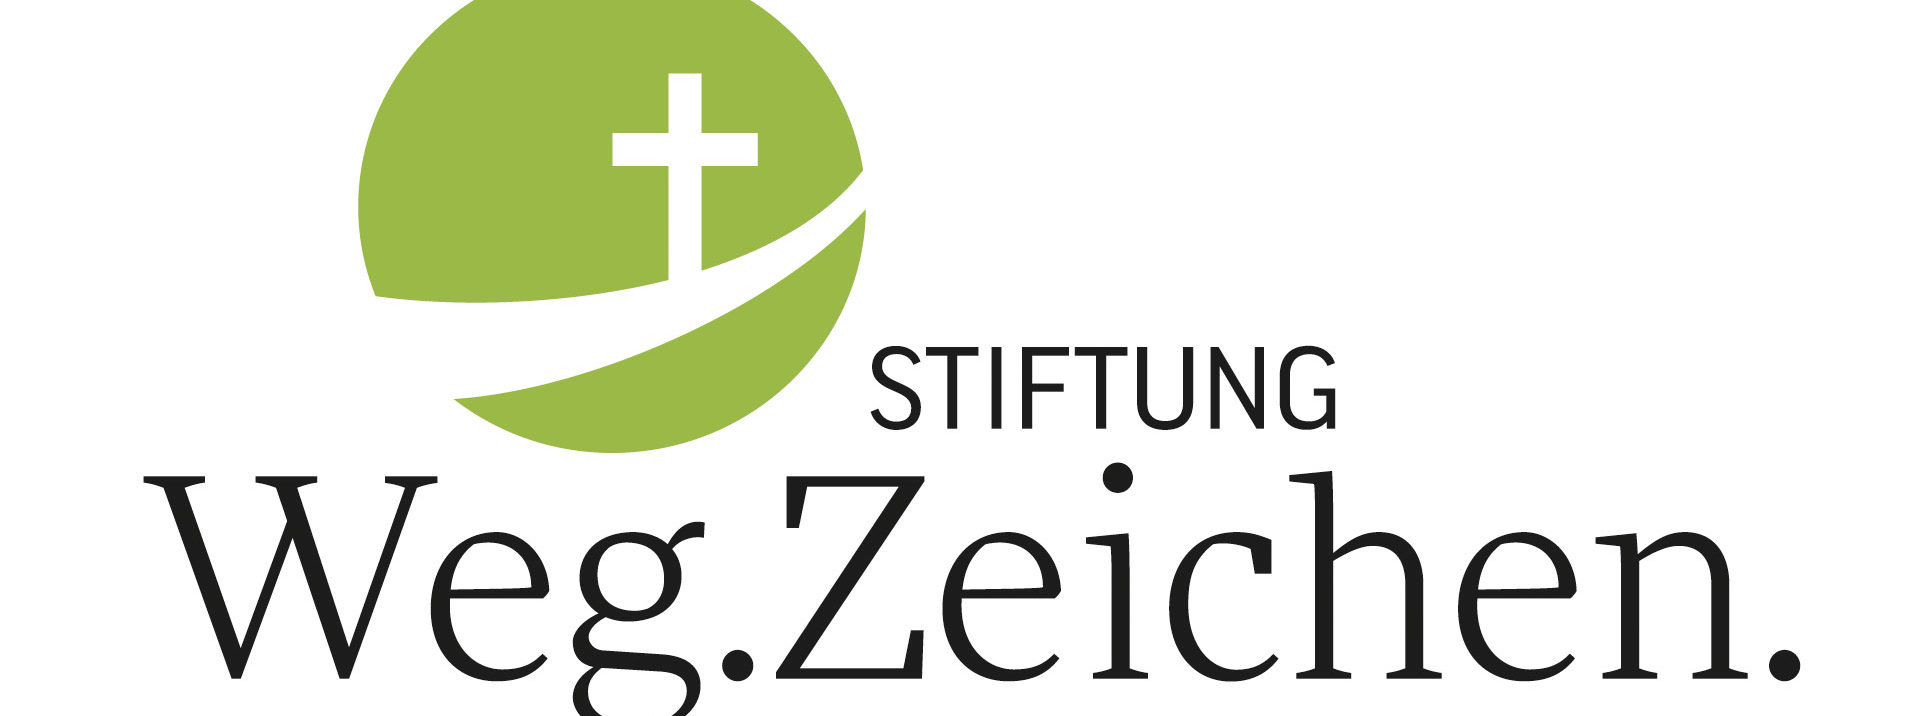 Stiftung Wegzeichen-Lebenzeichen-Glaubenzeichen